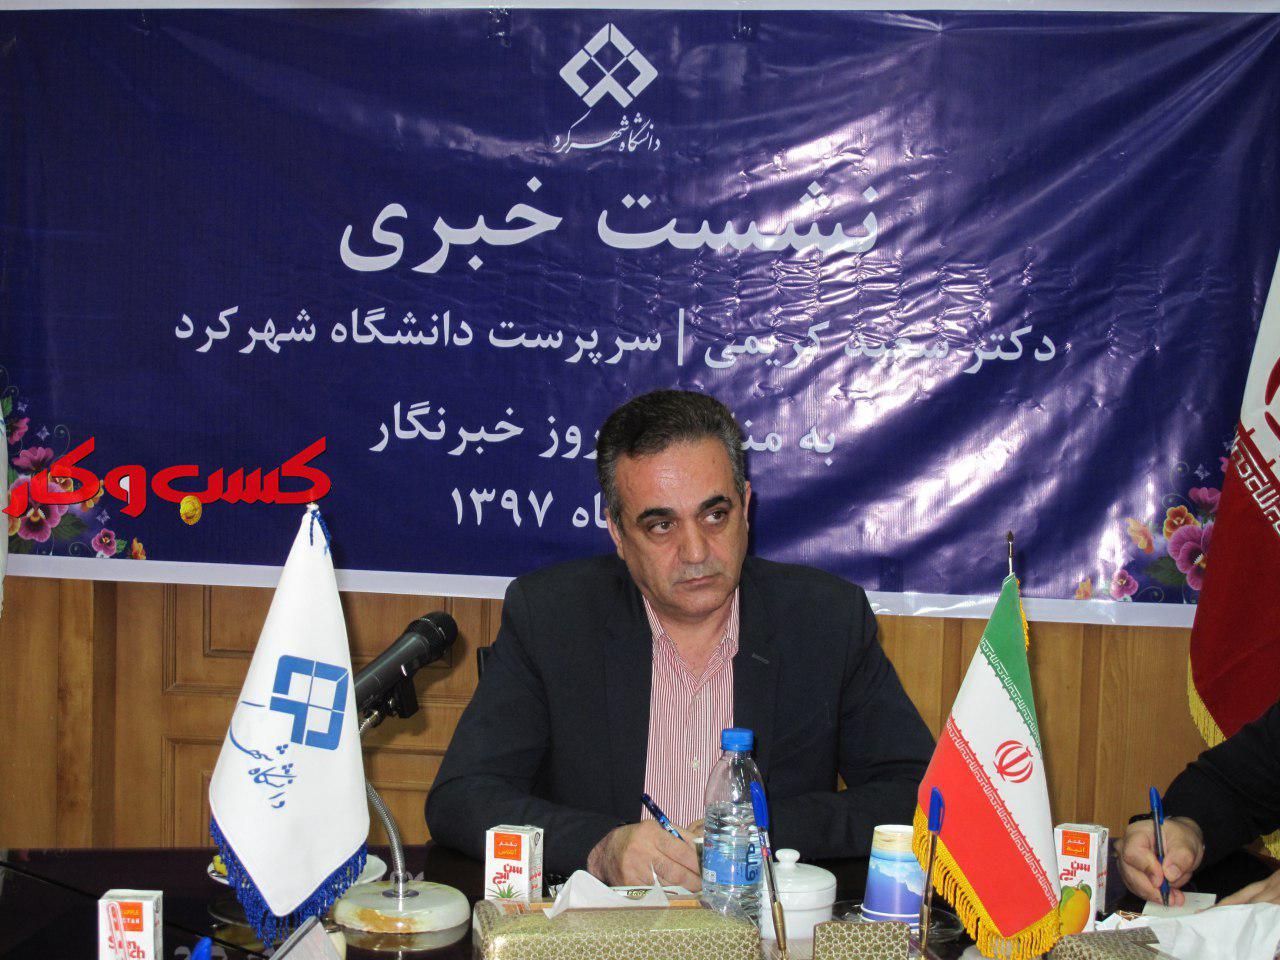 گزارش تصویری نشست خبری سعید کریمی دهکردی سرپرست دانشگاه شهرکرد ۱۵ مرداد ماه